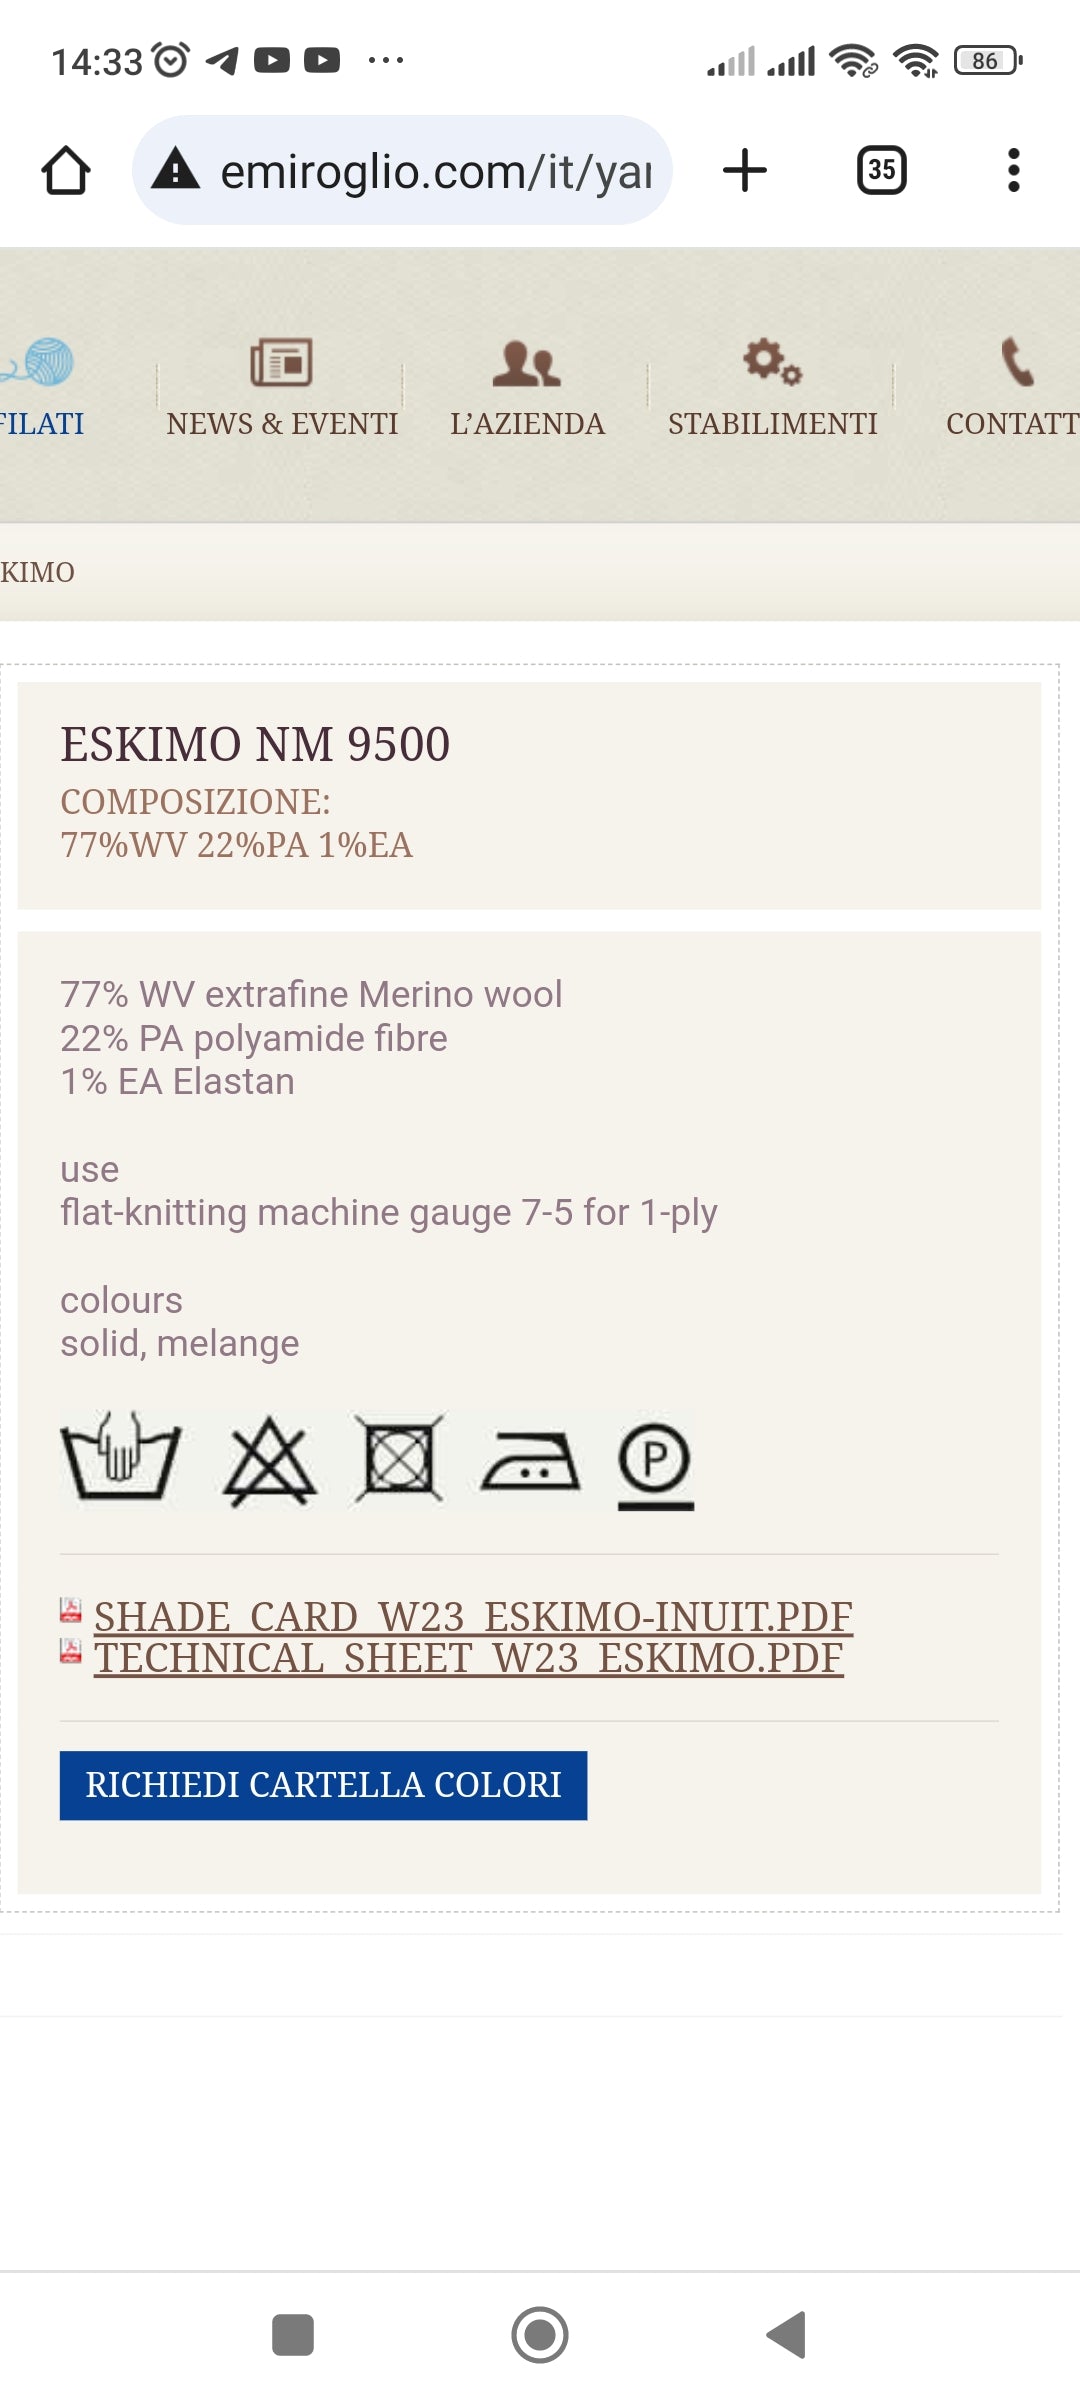 100g-200g Bouclé de Lana Merino Extrafina con Elastano Hilo Italiano para Tejer color Beige Camel N.155